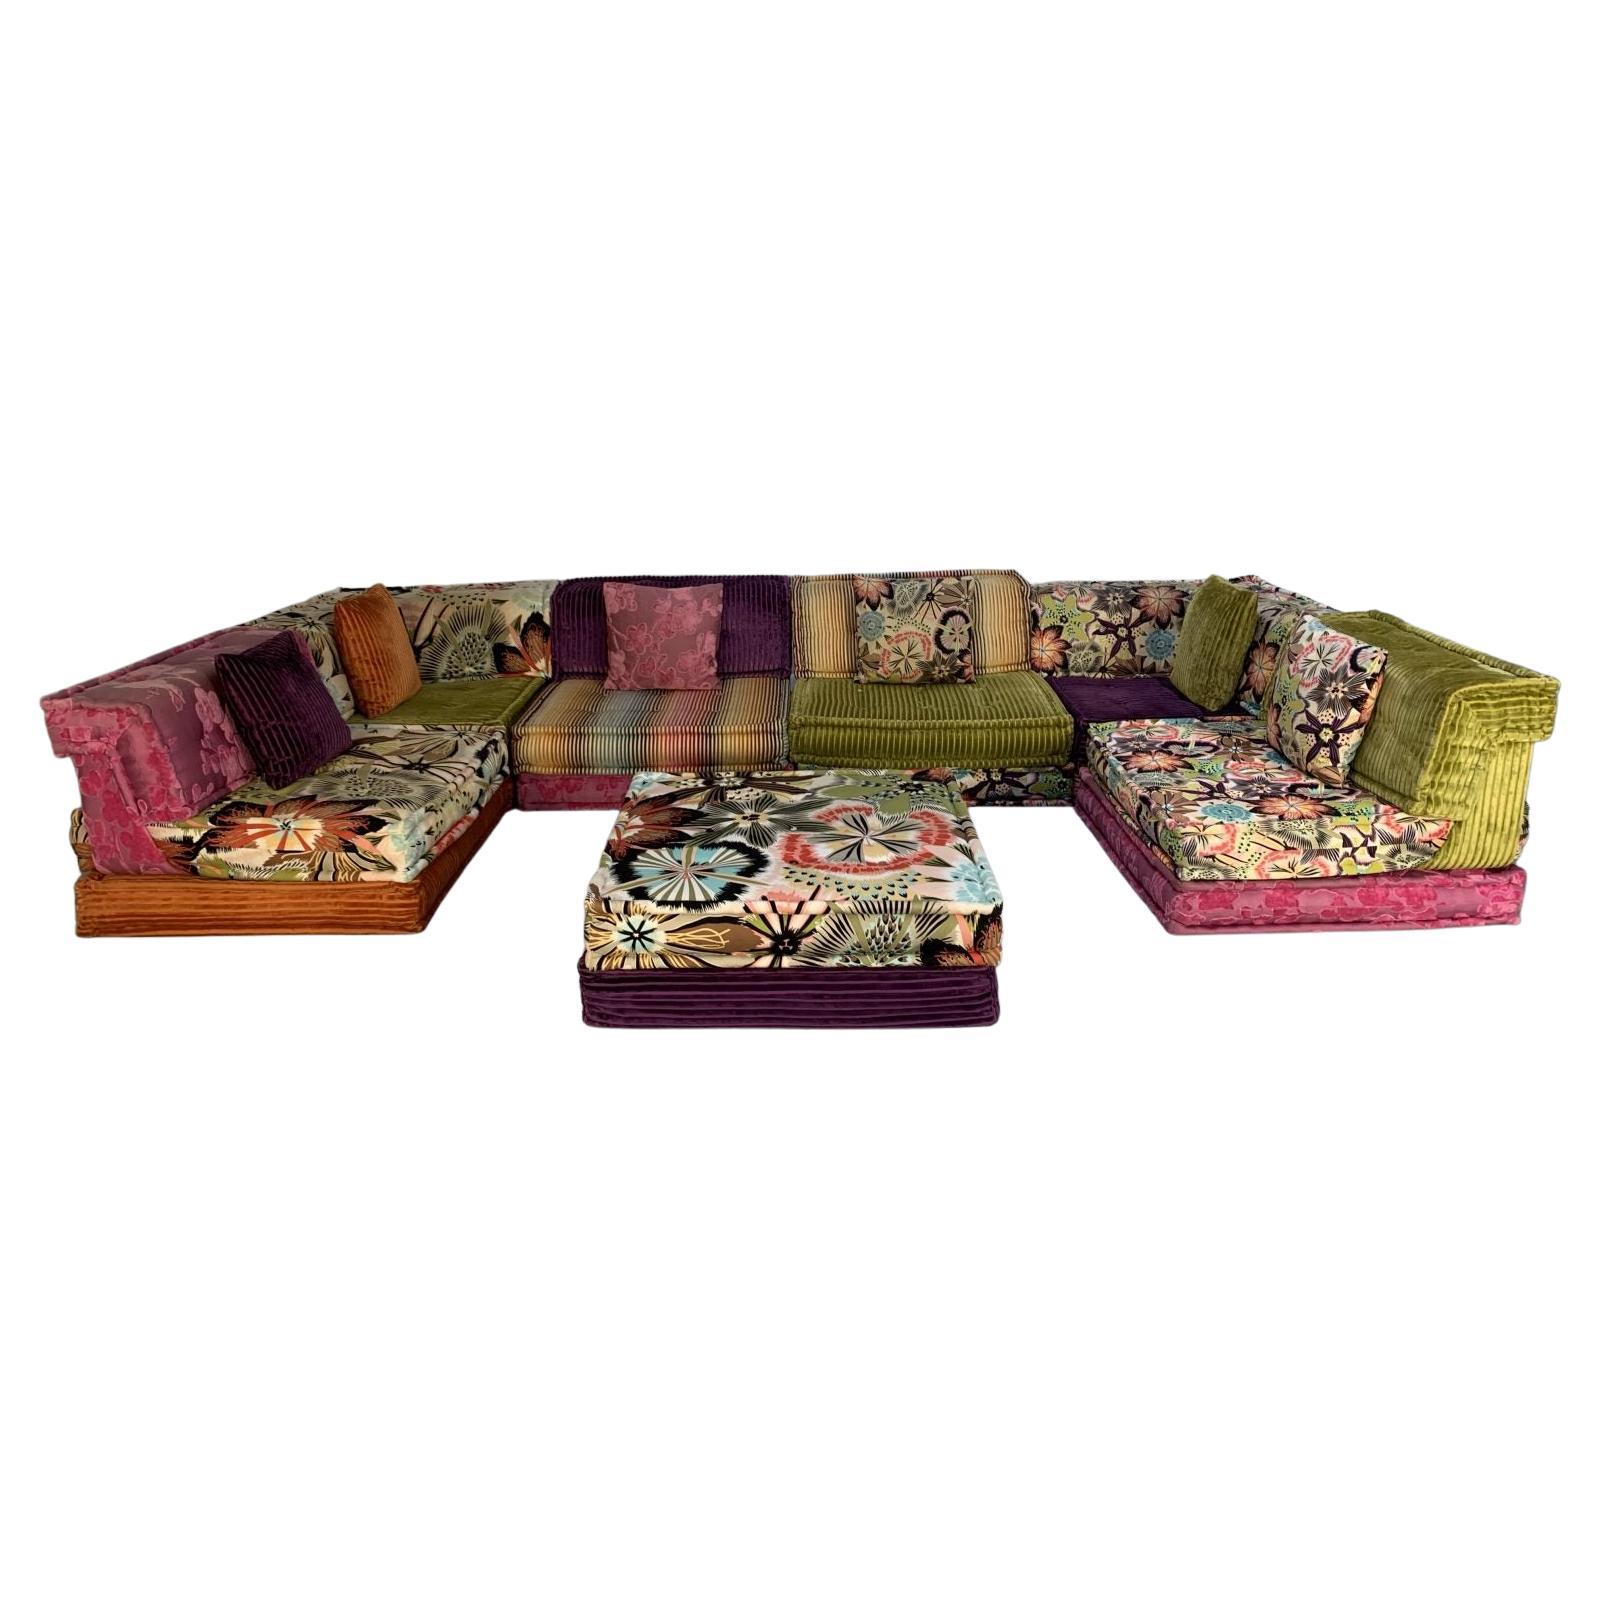 Roche Bobois “Mah Jong” Sofa in Missoni & Lelievre Fabric